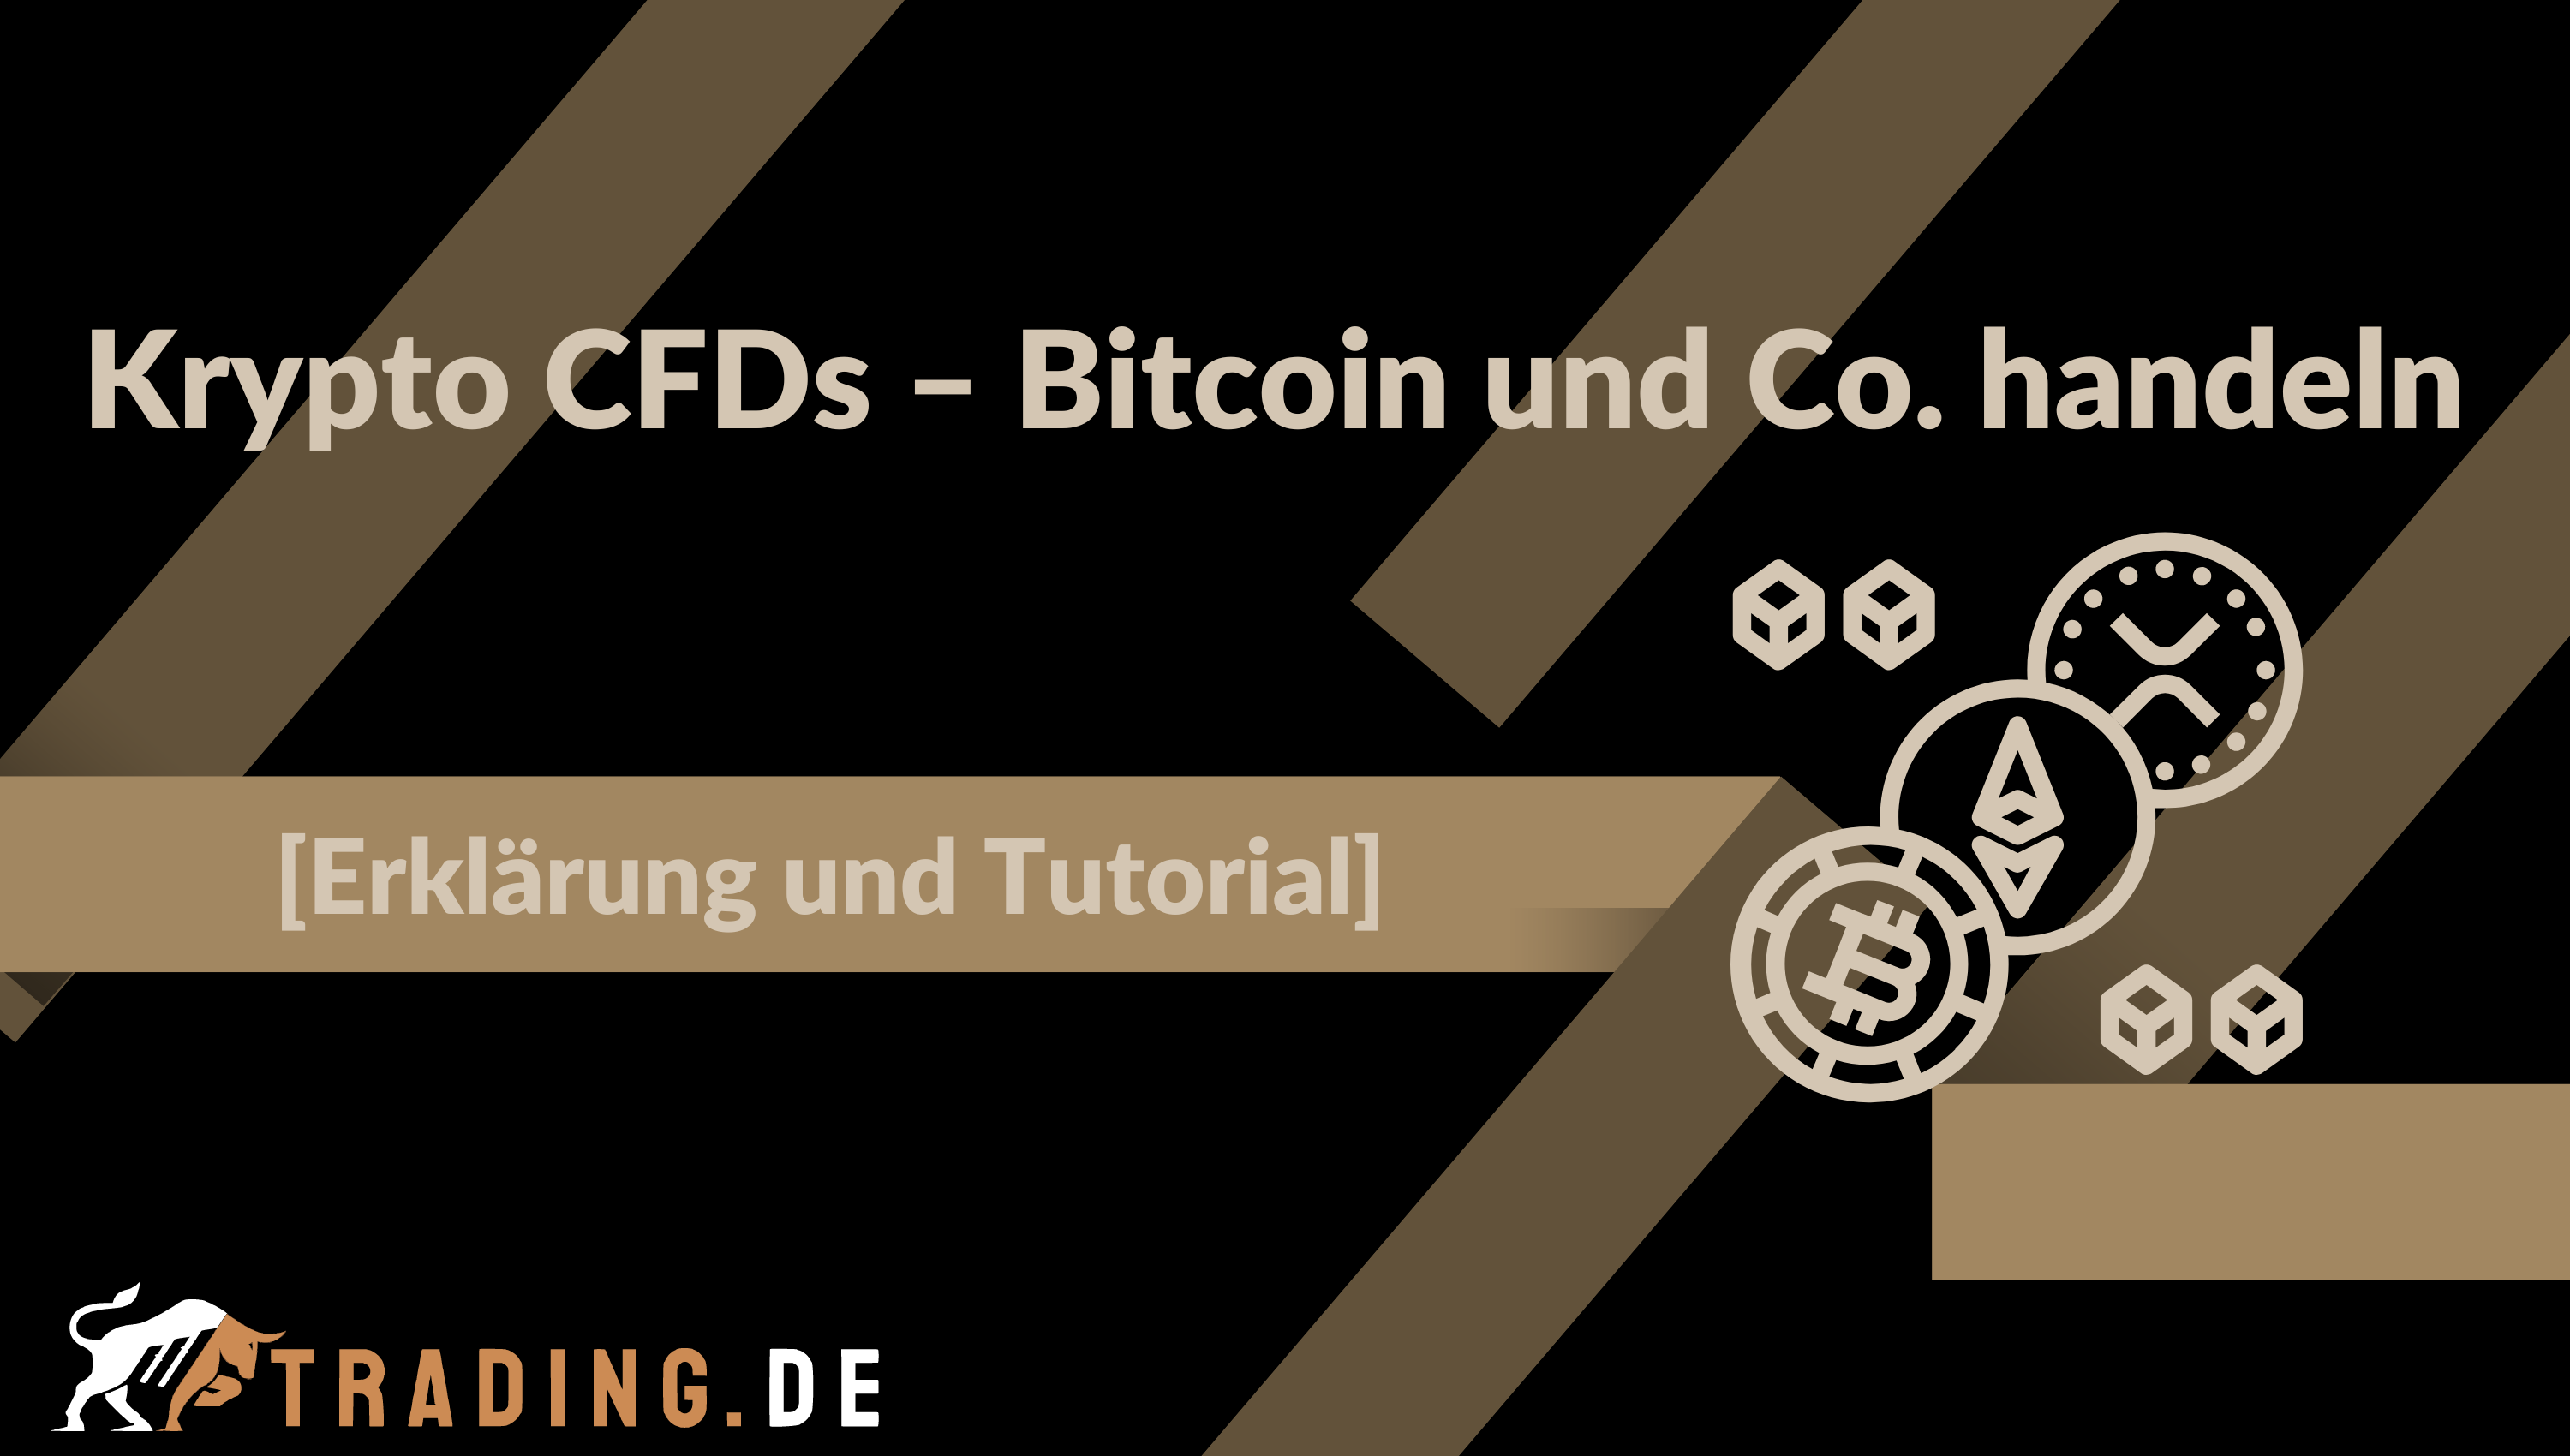 Krypto CFDs – Bitcoin und Co. handeln [Erklärung und Tutorial]